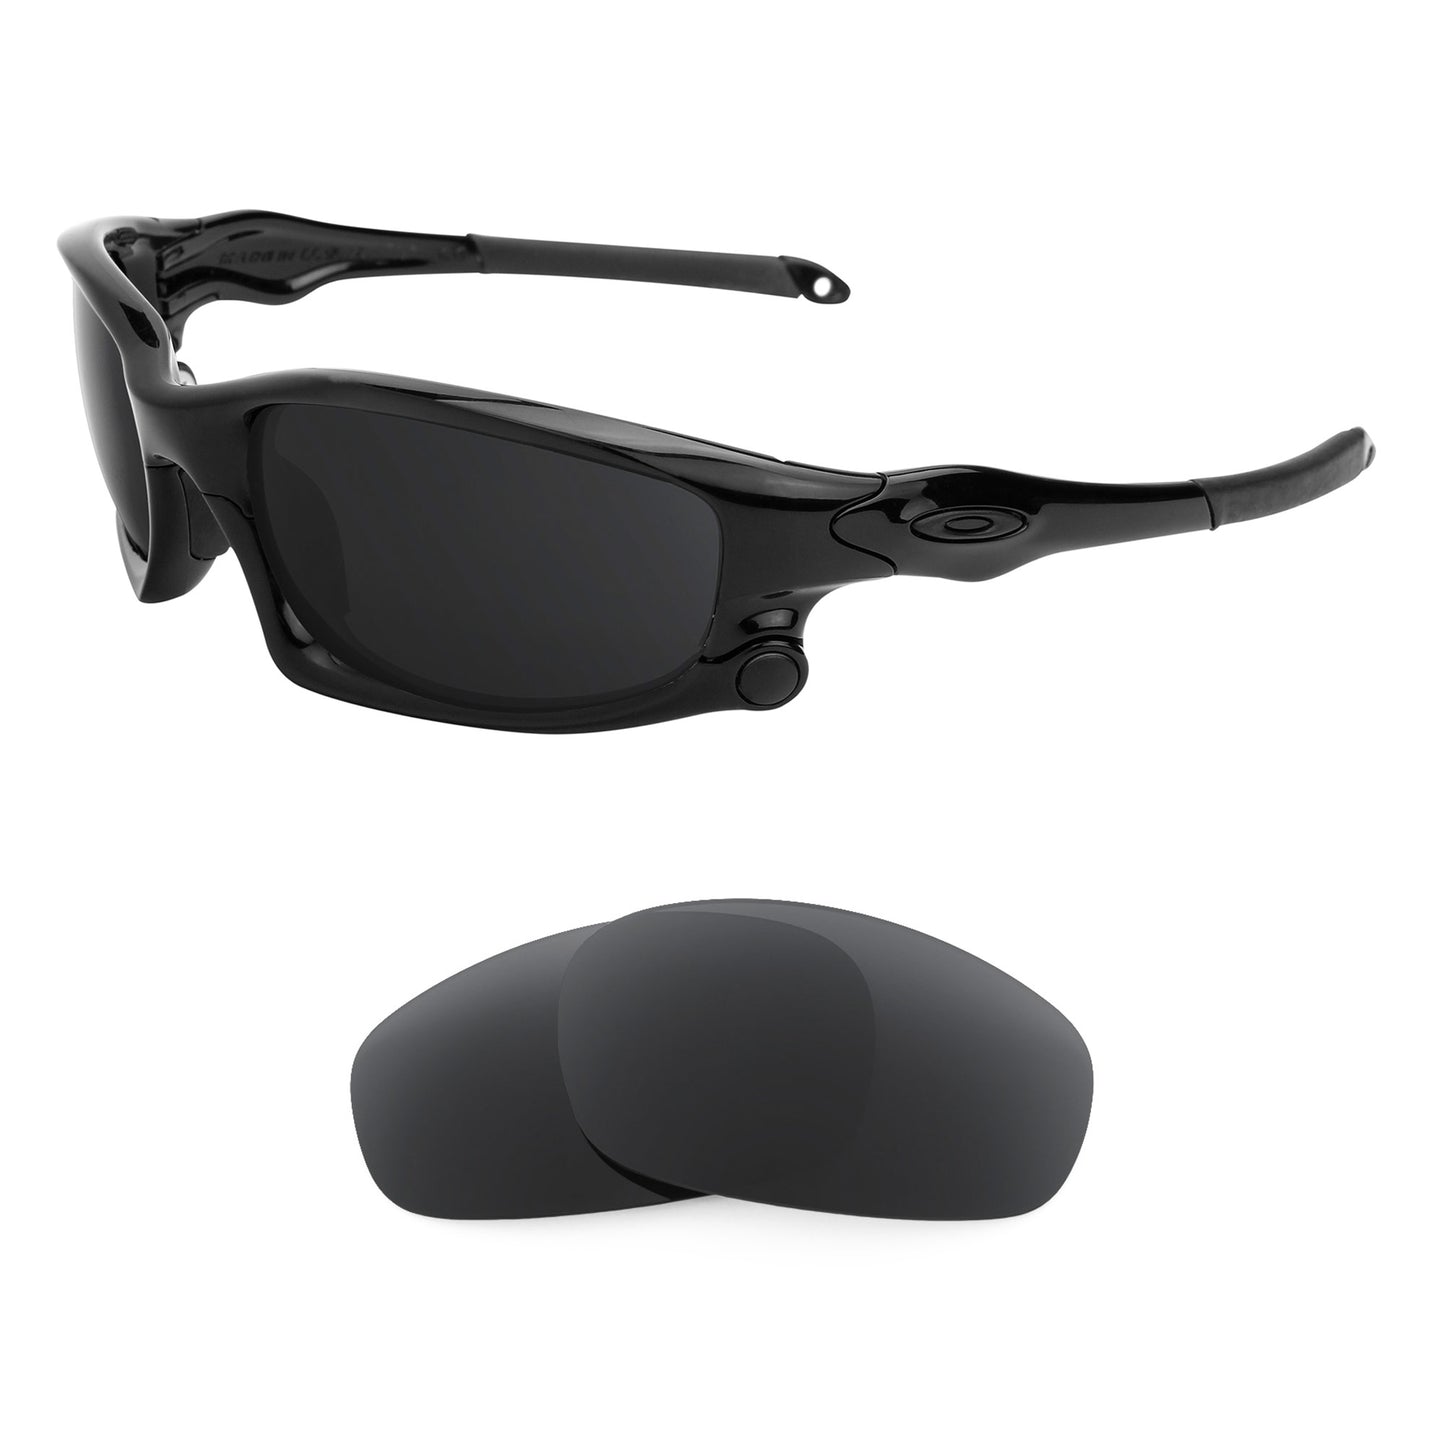 Oakley Split Jacket (Low Bridge Fit) sunglasses with replacement lenses